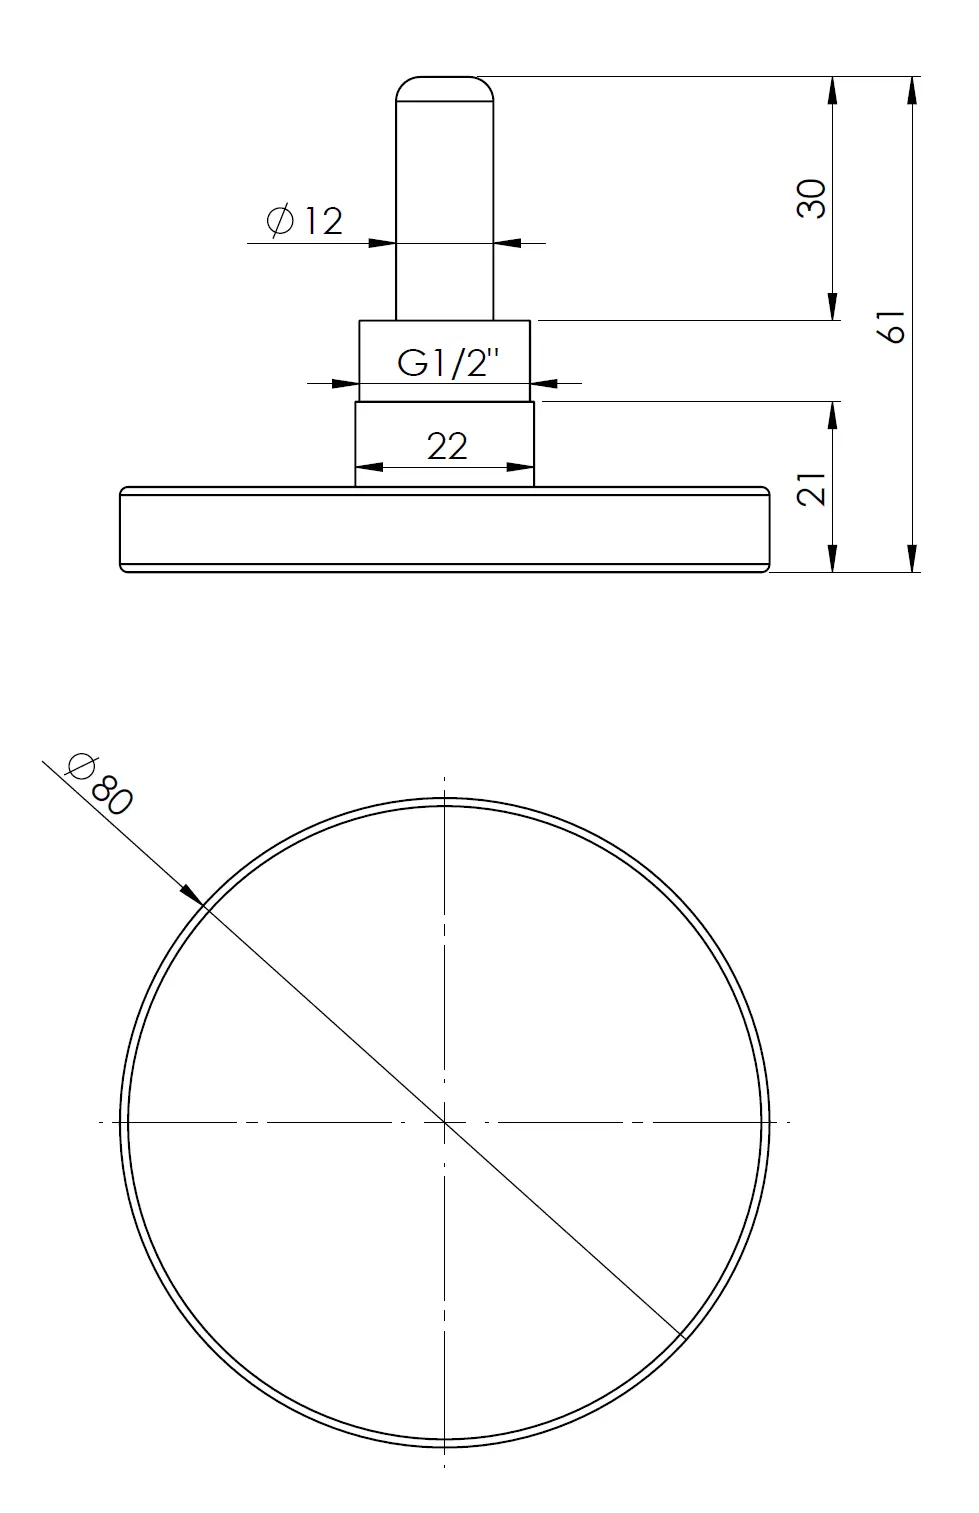 Termometr bimetaliczny BiTh 80, fi80 mm, 0÷60°C, L 40 mm, G1/2", ax, kl. 2 - budowa